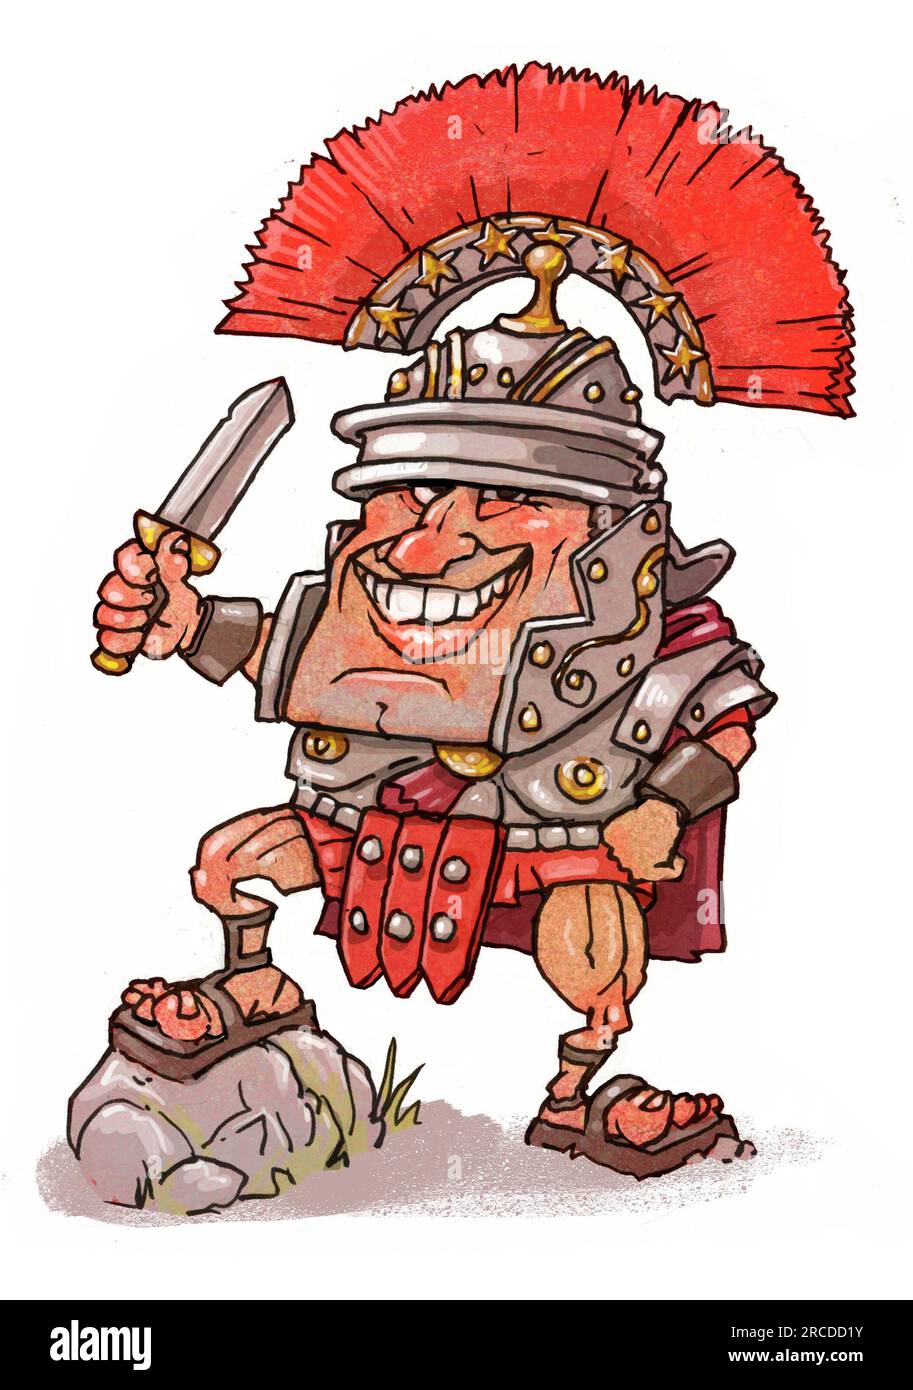 Illustrazione a cartoni animati centurione romano con le braccia, i centurioni indossavano creste trasversali sui loro elmetti che li distinguevano da altri legionari. Foto Stock